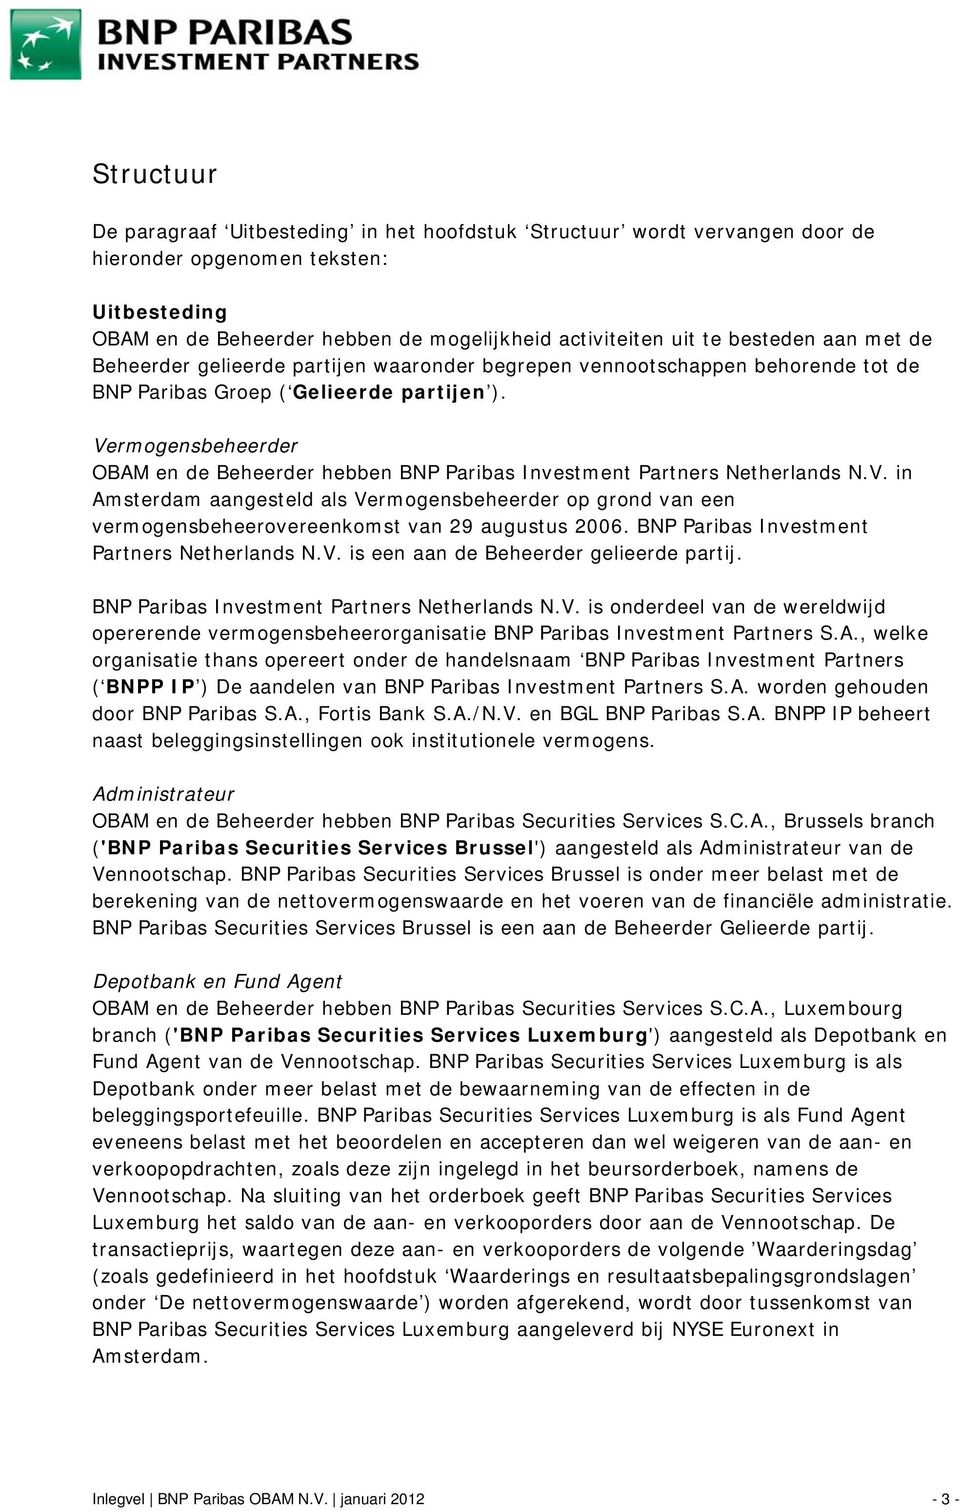 Vermogensbeheerder OBAM en de Beheerder hebben BNP Paribas Investment Partners Netherlands N.V. in Amsterdam aangesteld als Vermogensbeheerder op grond van een vermogensbeheerovereenkomst van 29 augustus 2006.